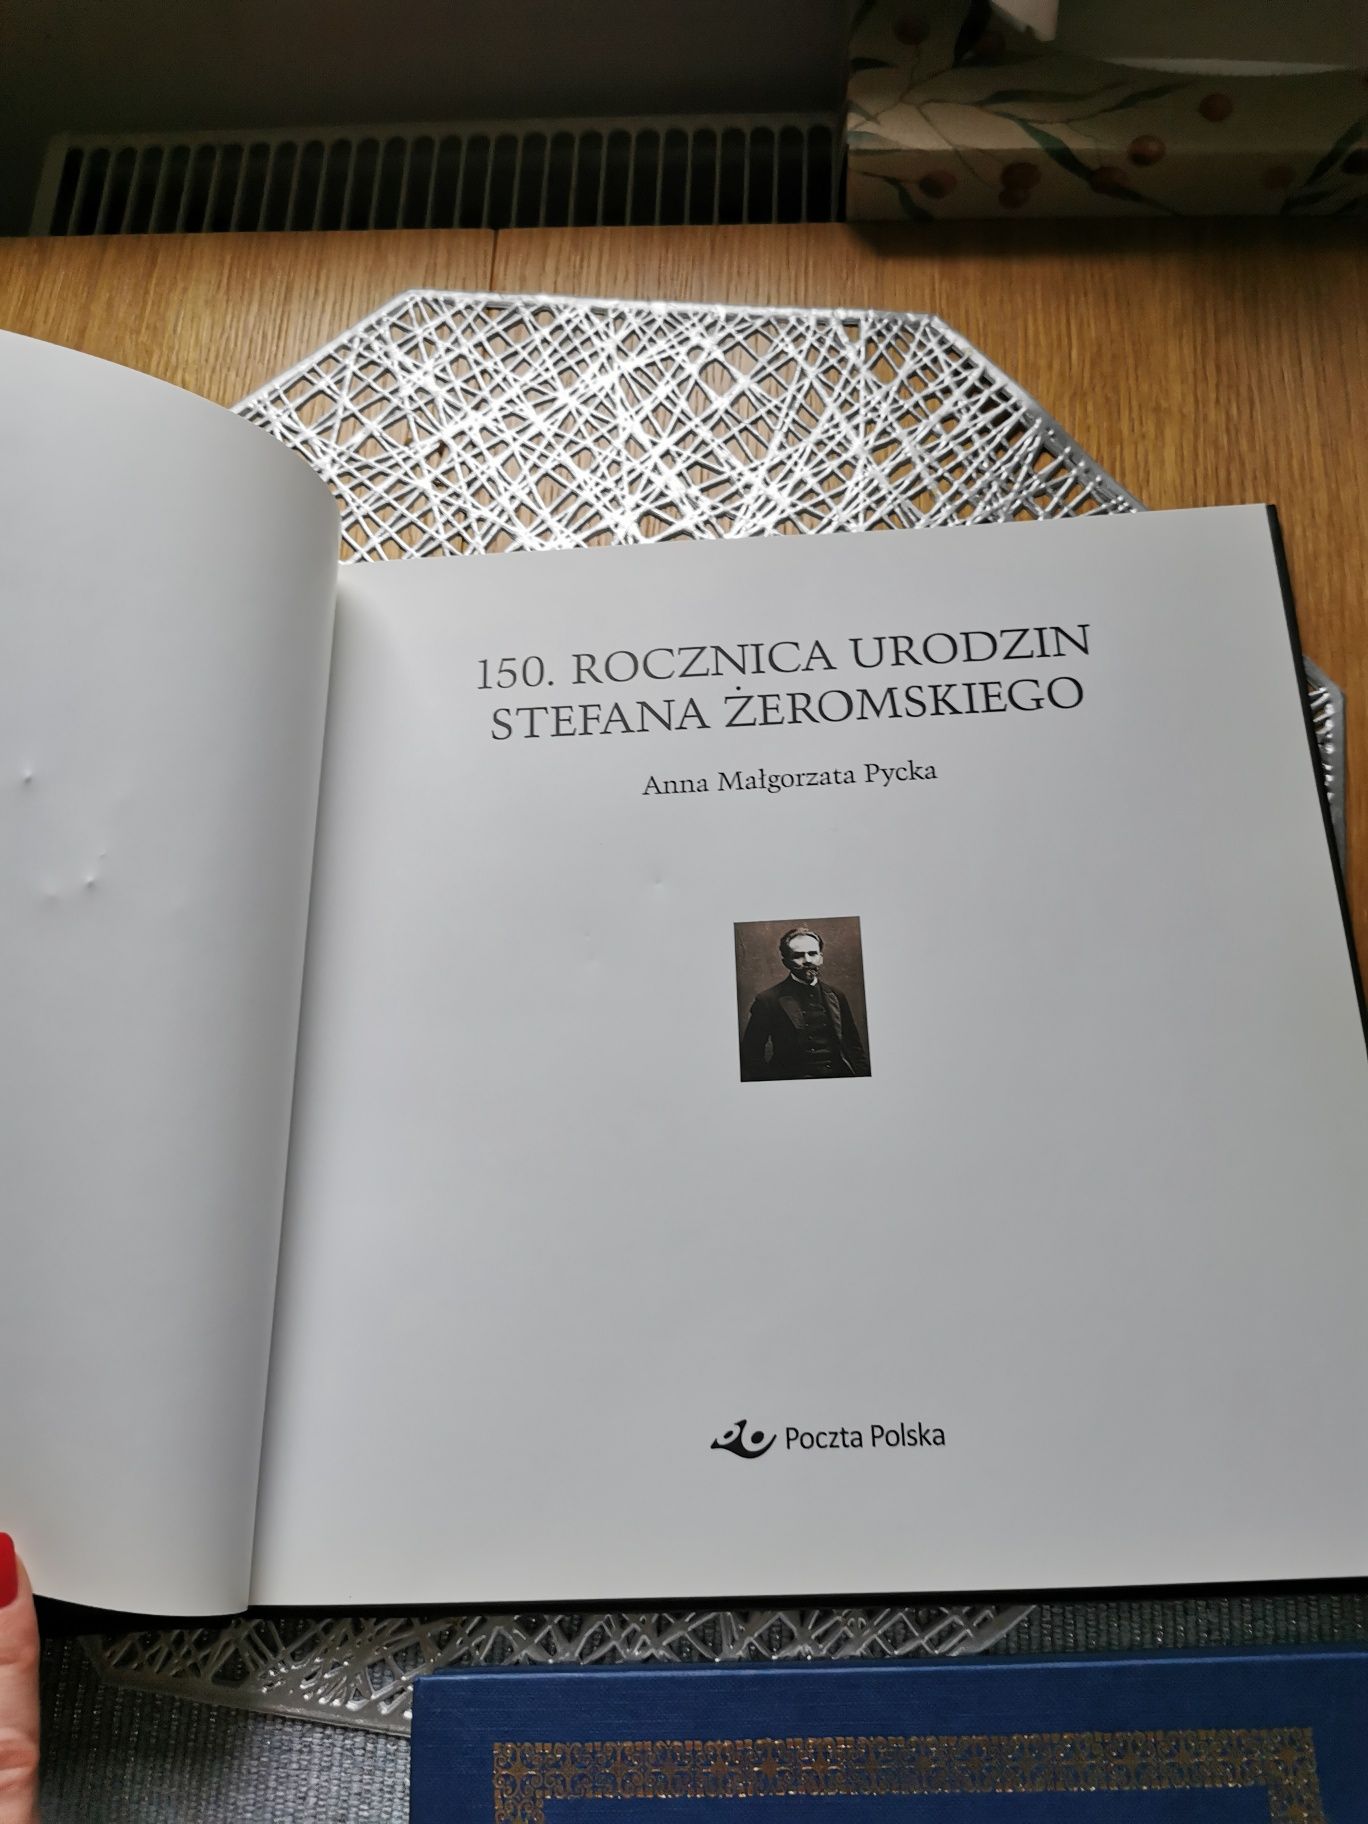 Album "150 rocznica urodzin Stefana Żeromskiego"